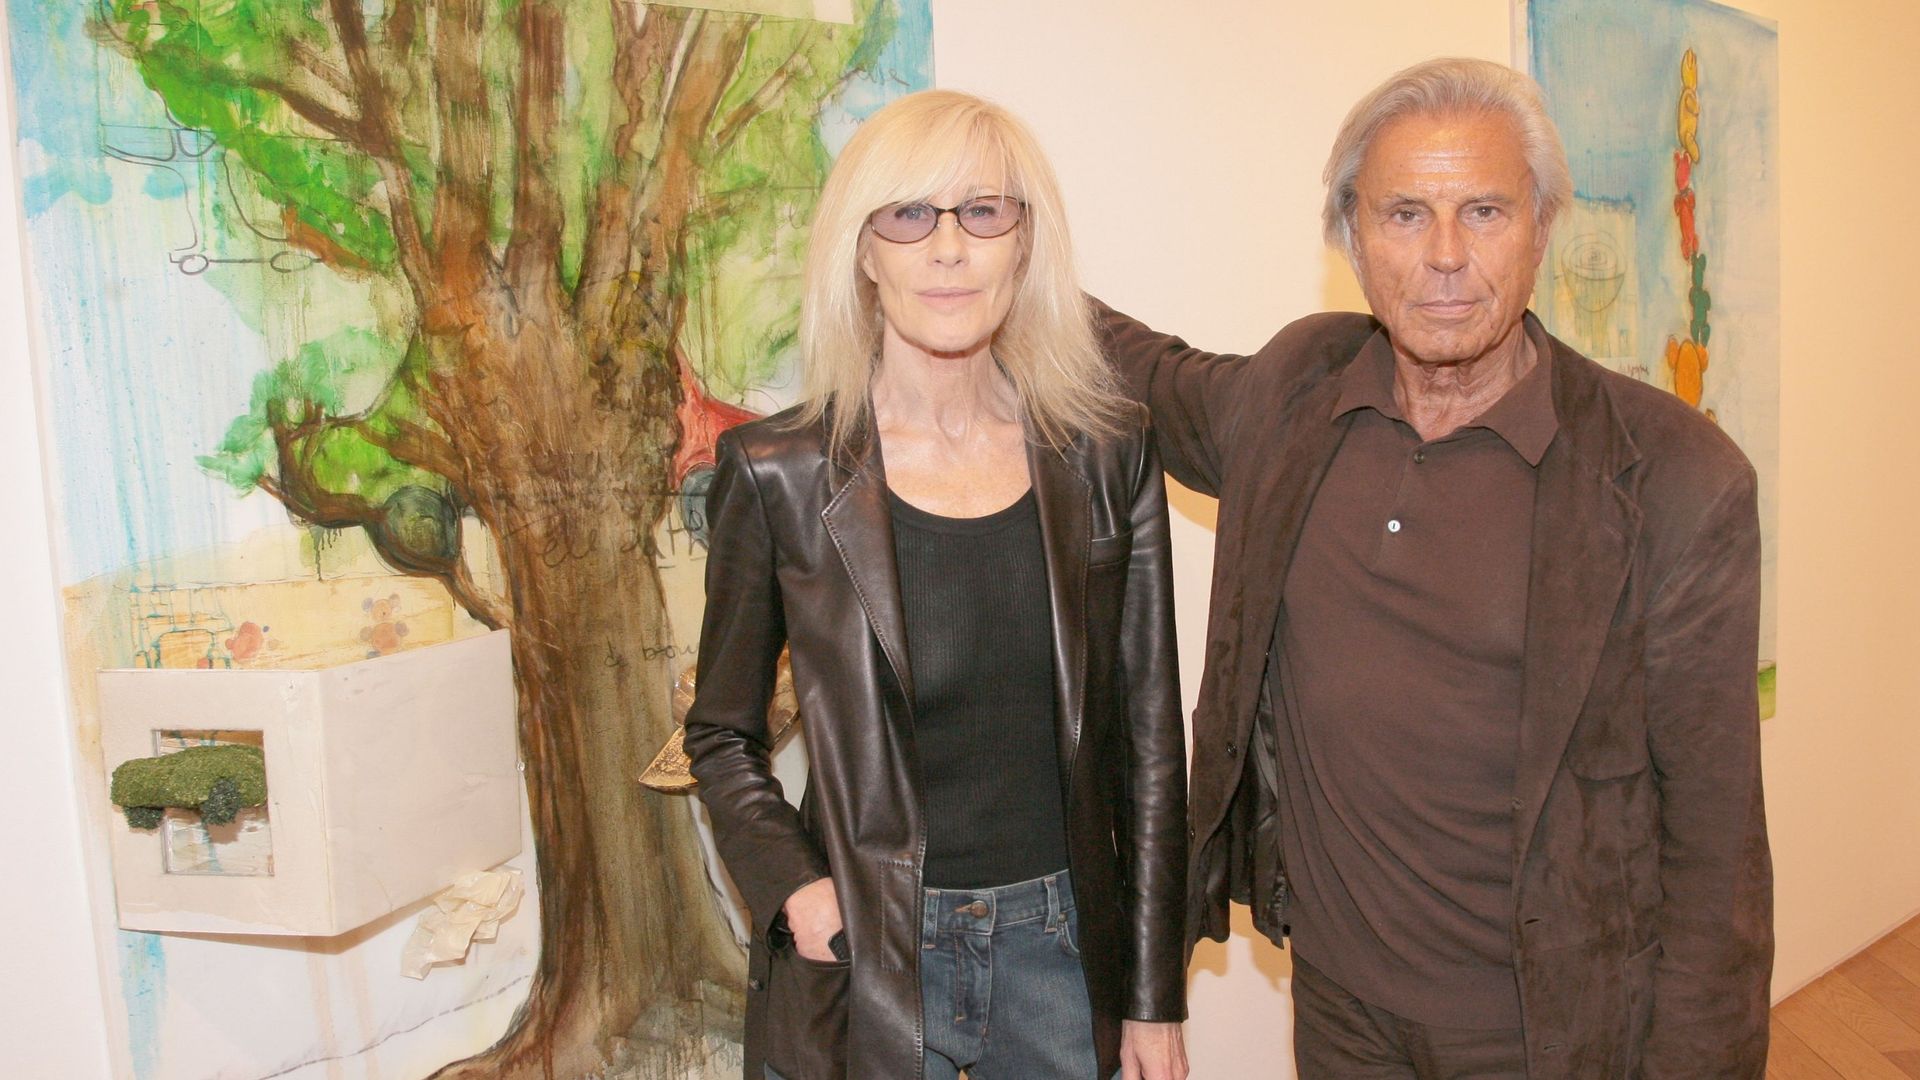 François et Betty Catroux au vernissage de l’exposition de Fabrice Hyber "Pure Hyber" à la Galerie Jérôme De Noirmont à Paris.